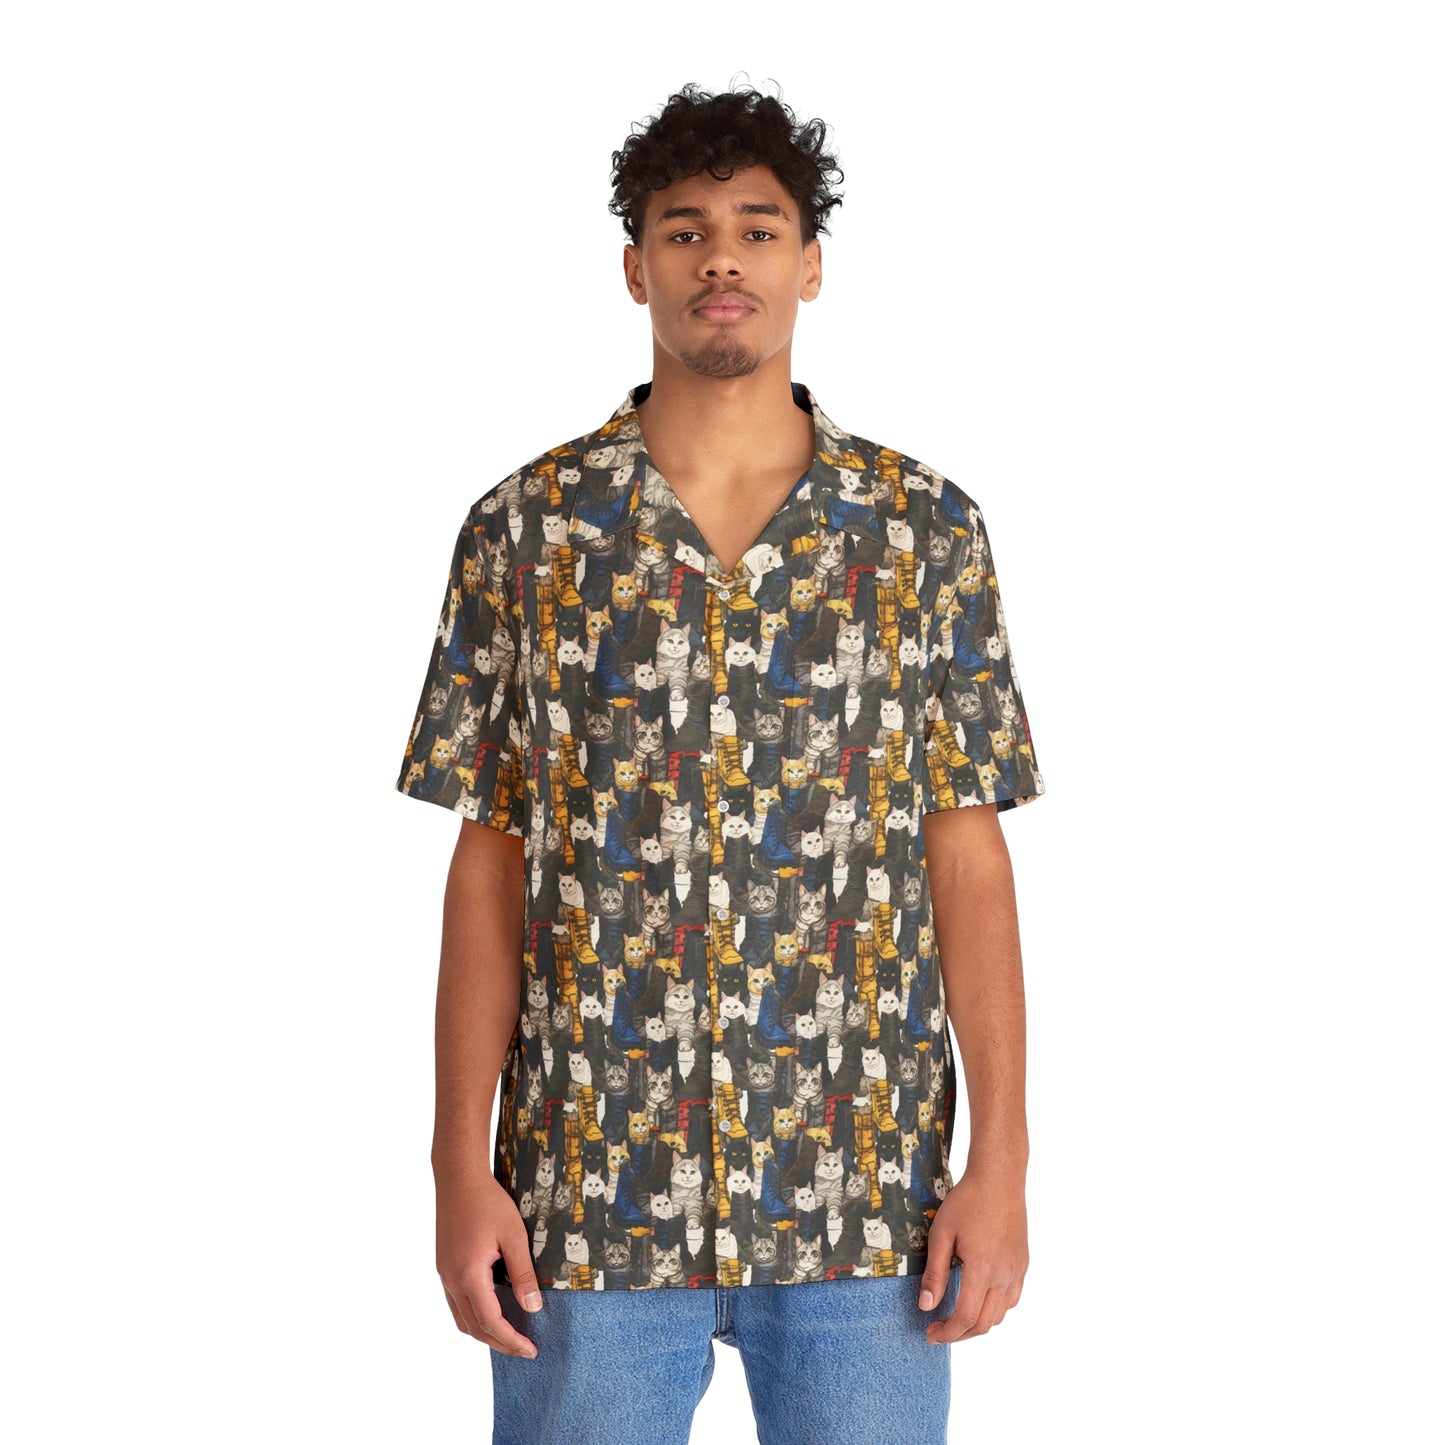 Boots n’ Cats Men's Hawaiian Shirt (AOP)